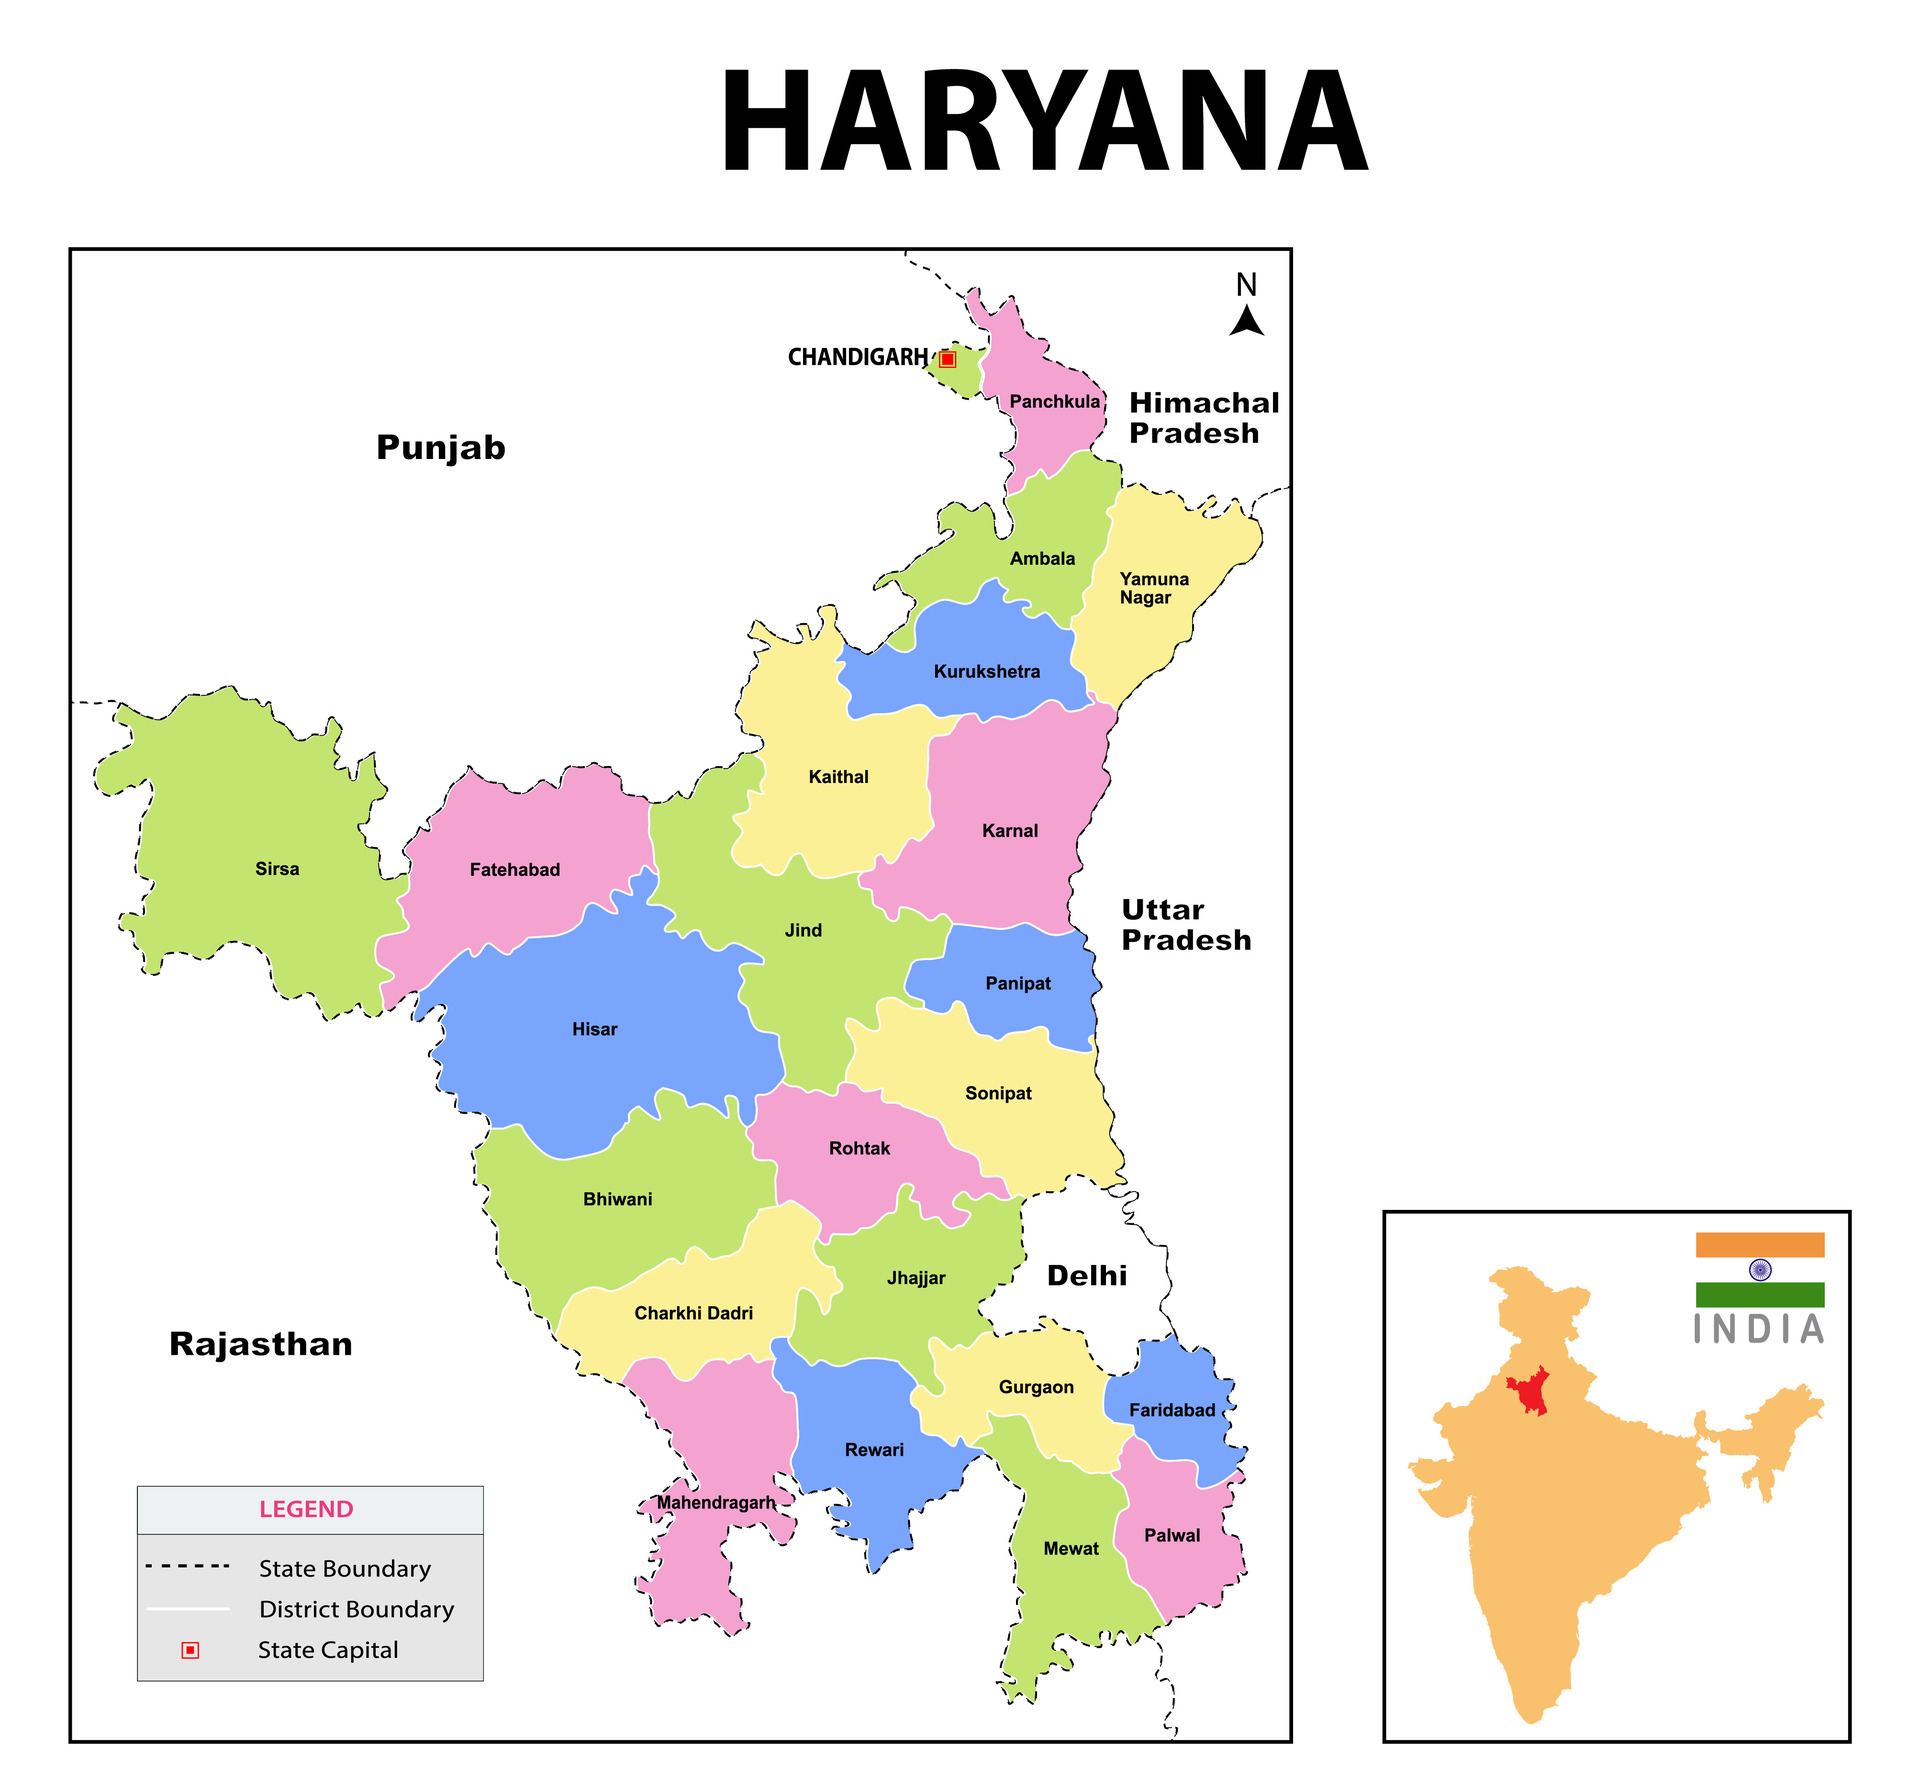 Haryana Declares 'Jai Jai Jai Haryana' as Official State Song After Extensive Selection Process